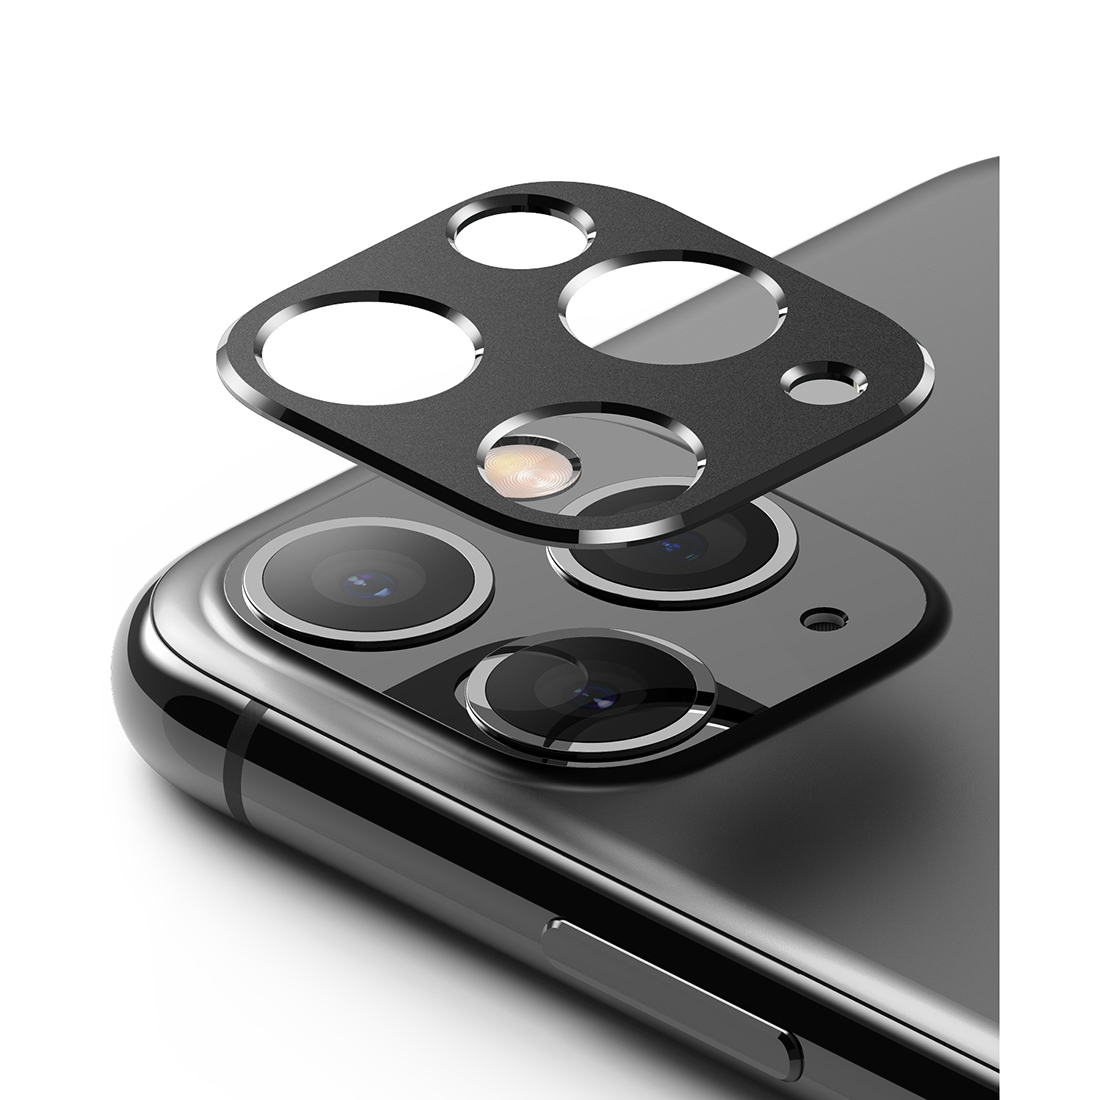 Order Ringke Camera Styling Aluminum Frame iPhone 11 Pro / iPhone 11